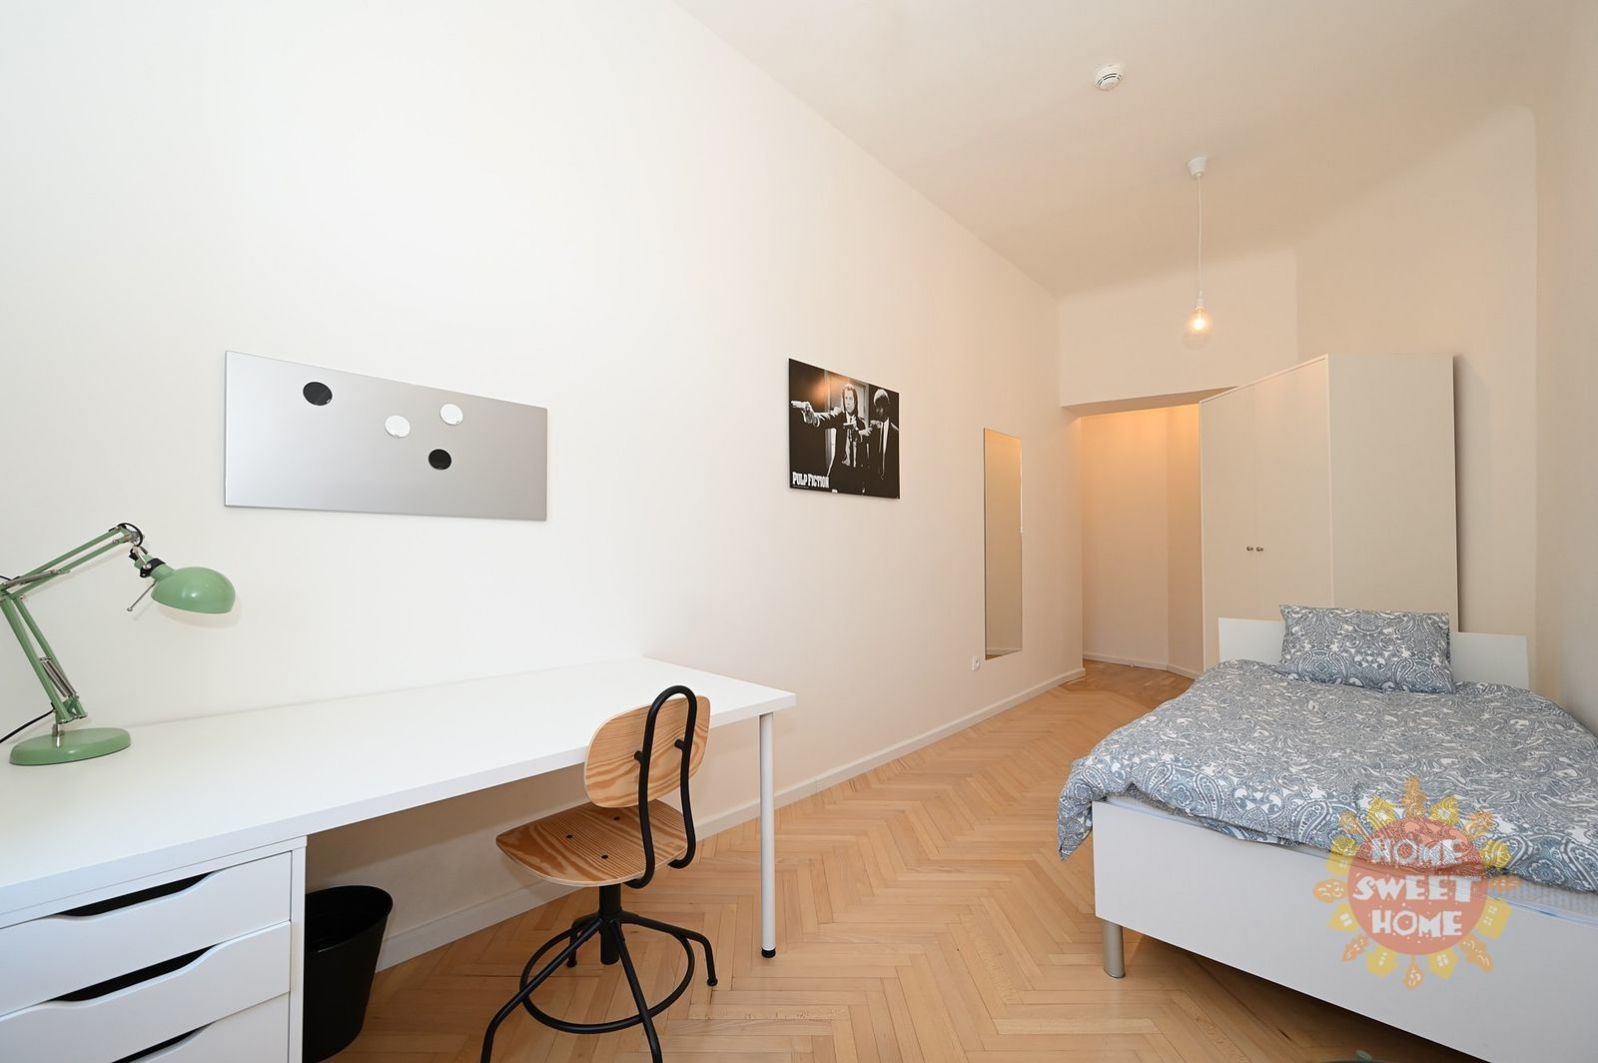 Rezidenční bydlení, pronájem vybaveného pokoje 14m2, ulice nám.Kinských, Praha 5, od 1.2.2023, obrázek č. 1